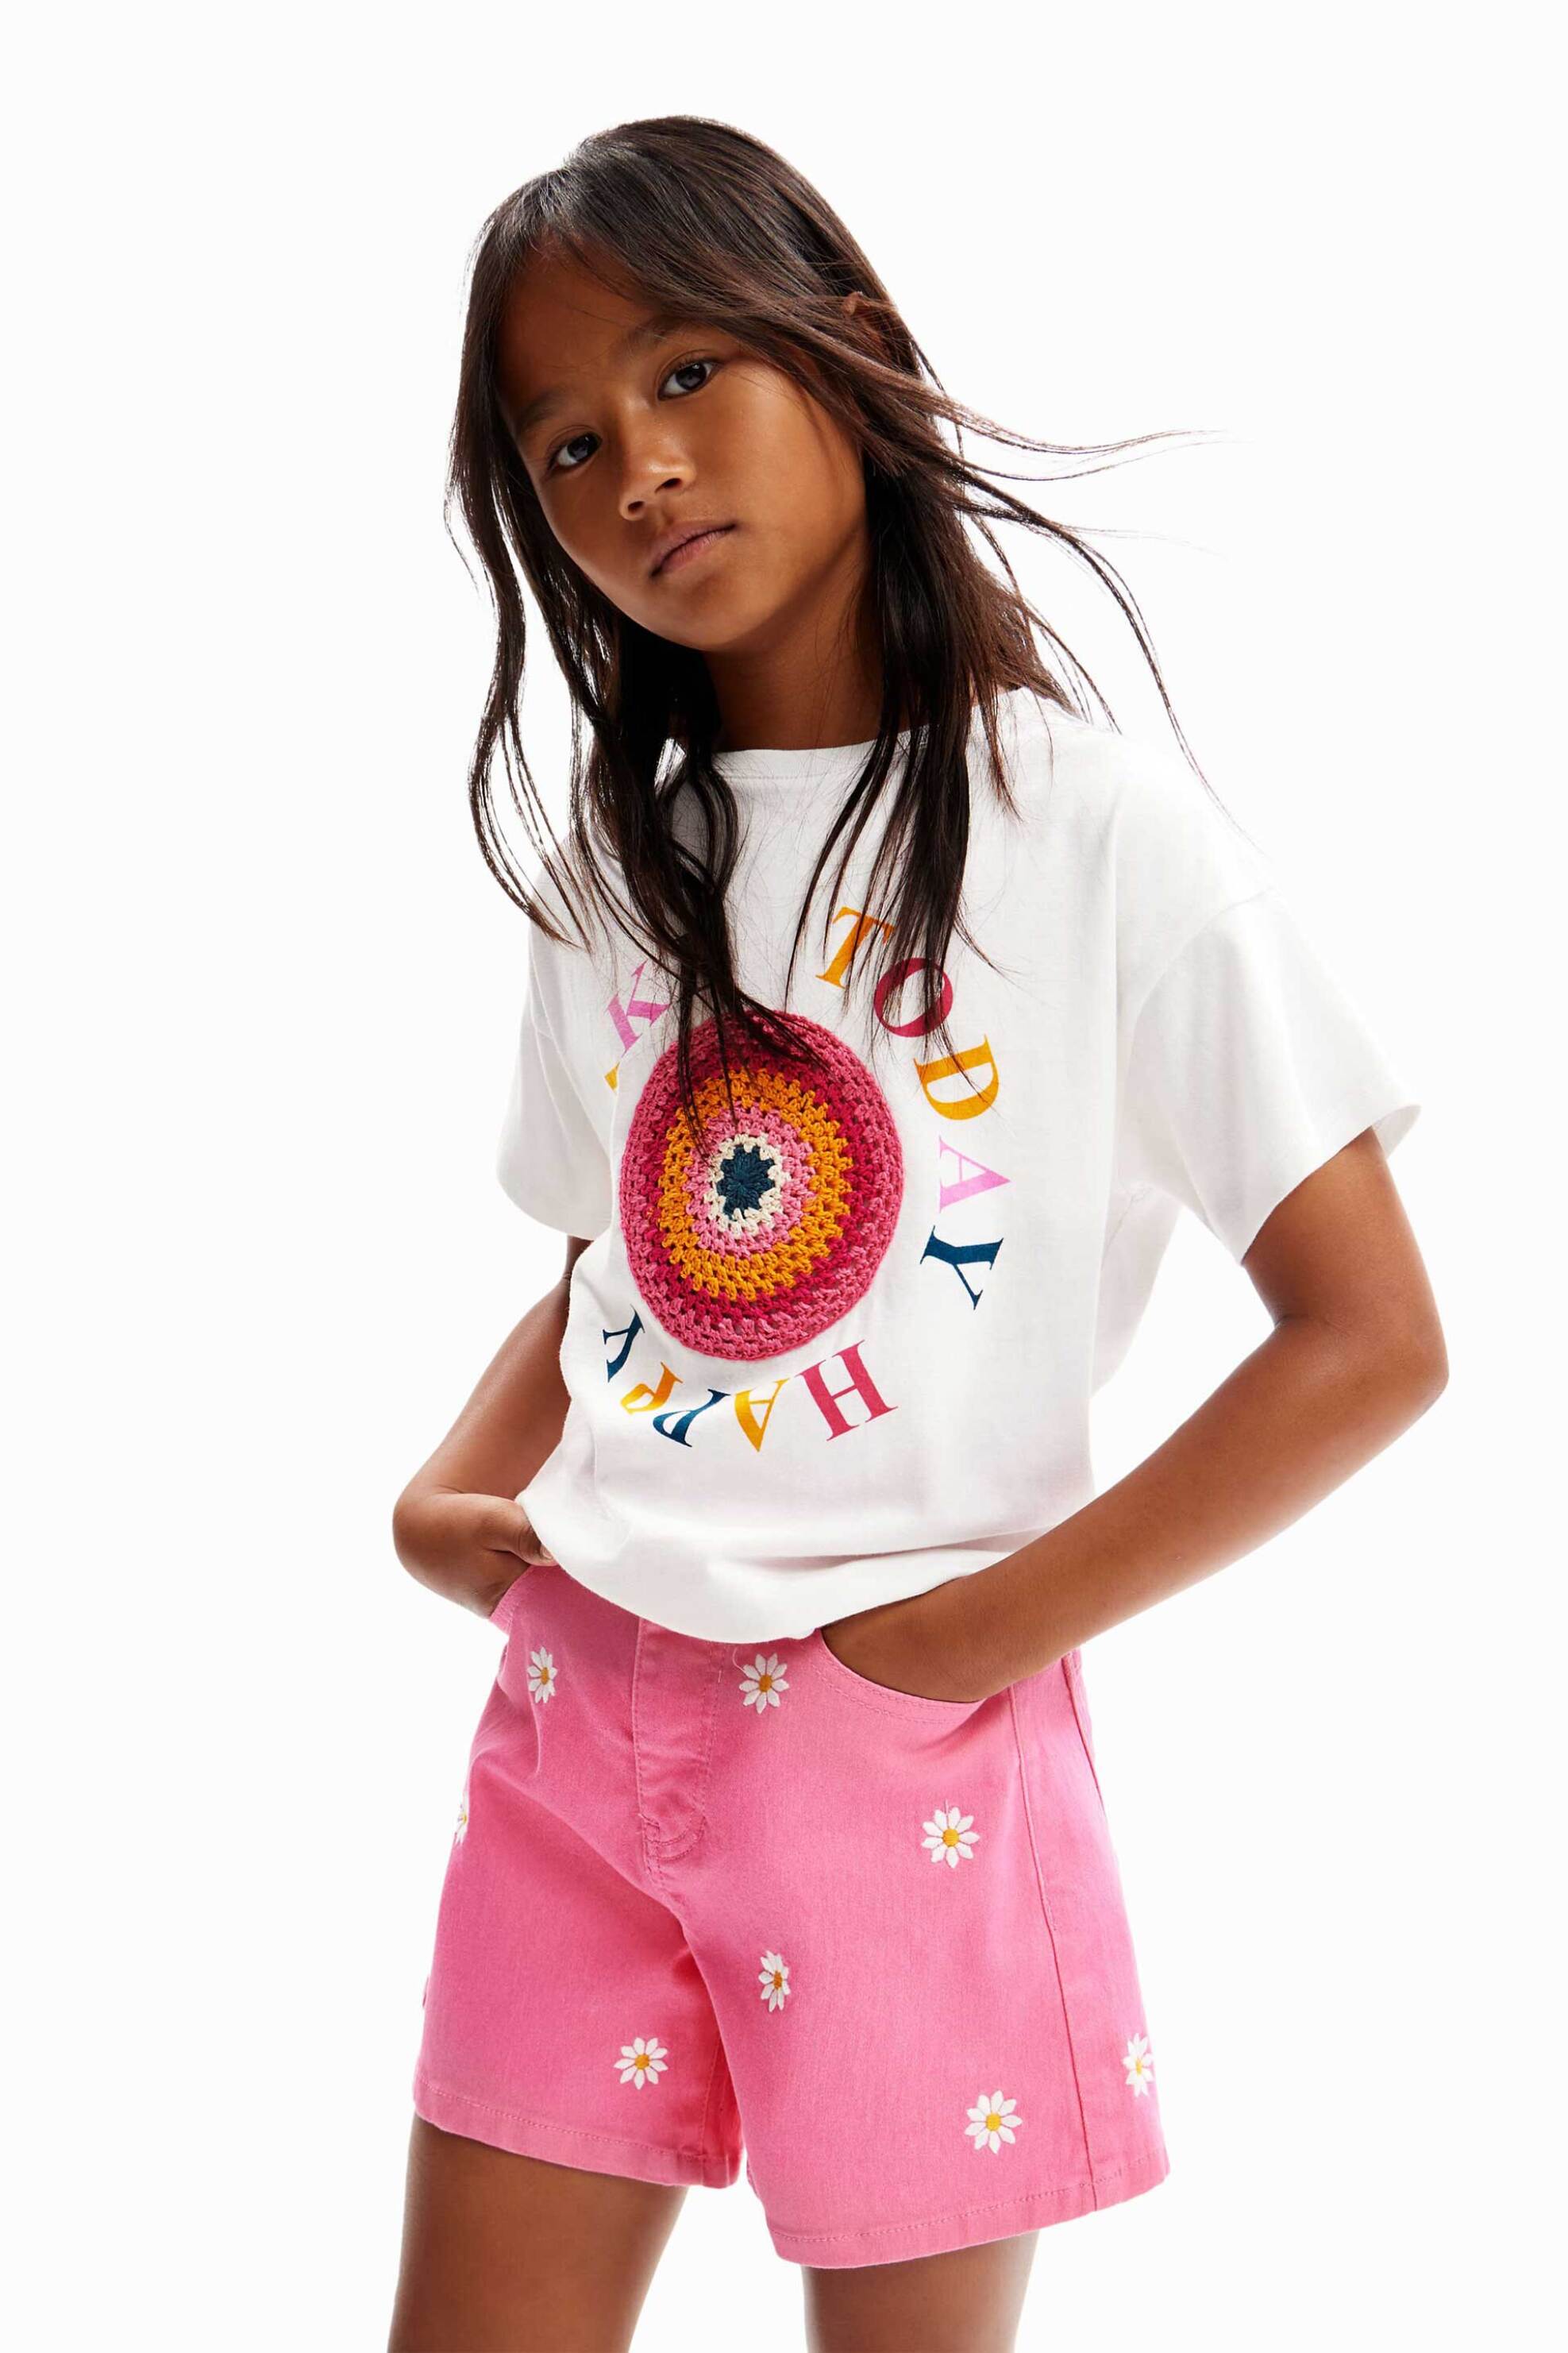 Παιδικά Ρούχα, Παπούτσια & Παιχνίδια > Παιδικά Ρούχα & Αξεσουάρ για Κορίτσια > Παιδικές Μπλούζες για Κορίτσια > Παιδικά T-Shirts για Κορίτσια Desigual παιδικό T-shirt με πολύχρωμο lettering και κεντημένο σχέδιο "Cibeles" - 24SGTK11 Λευκό